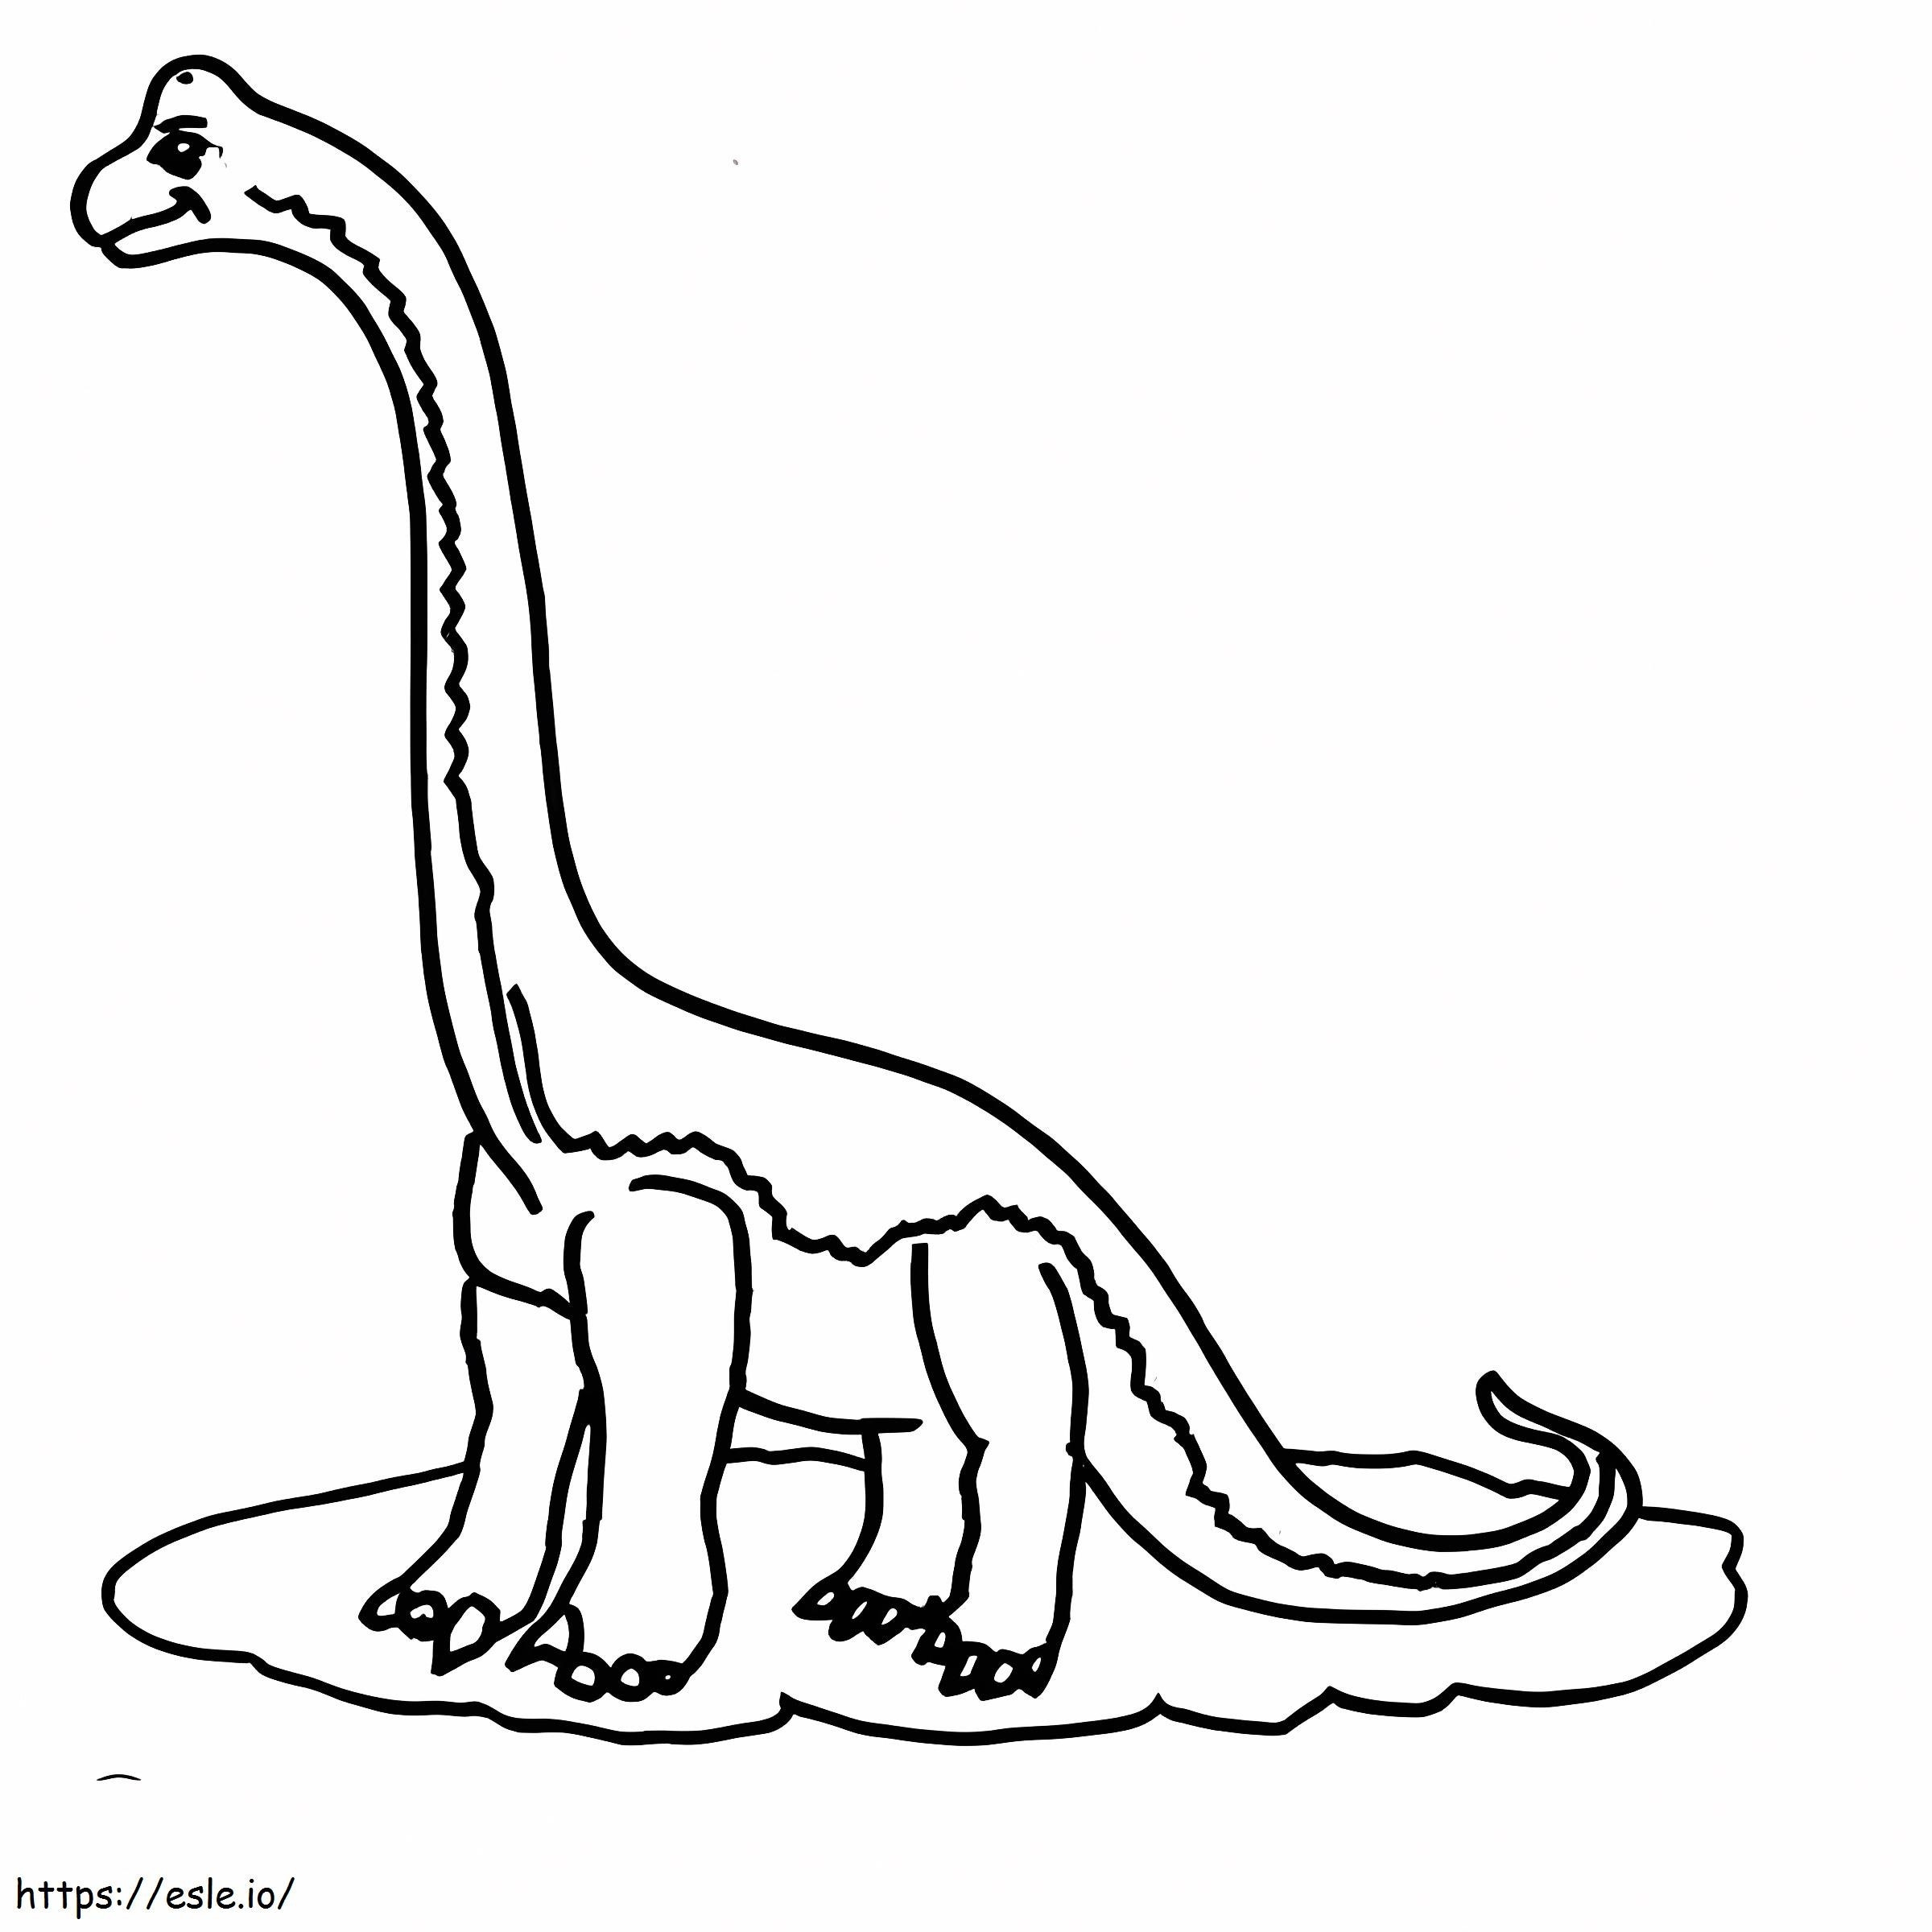 Brachiosaurus zum Ausdrucken ausmalbilder